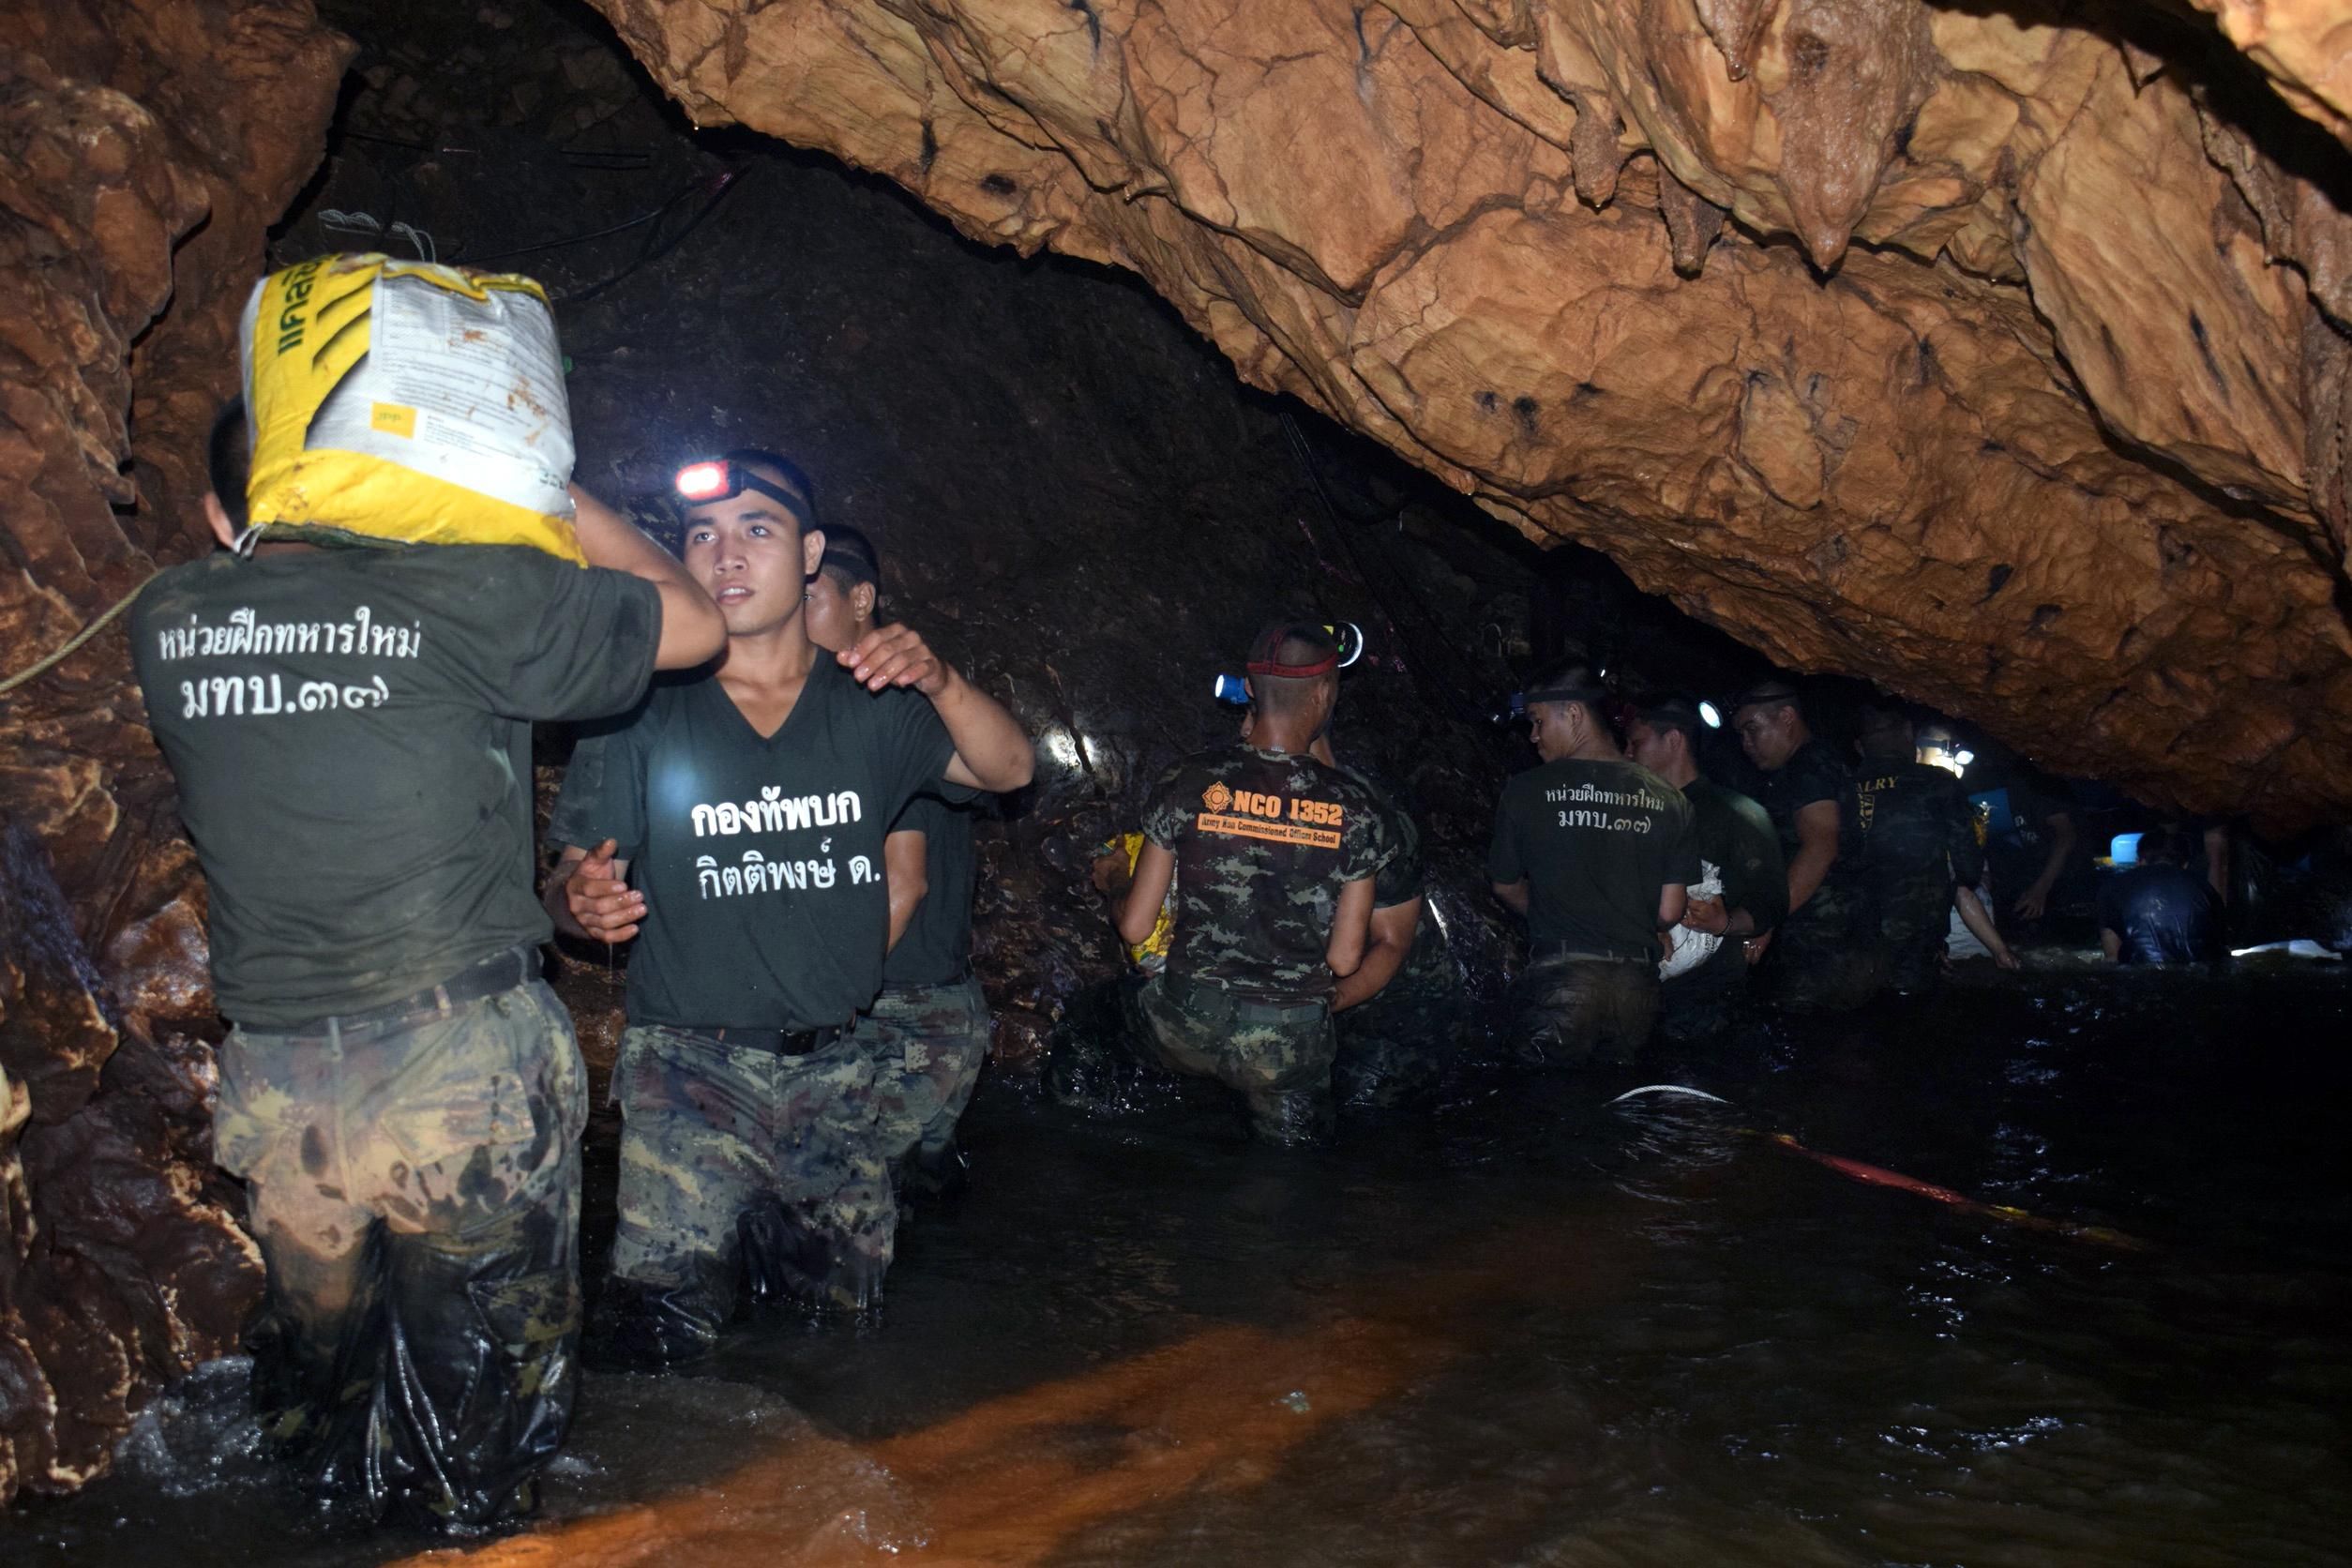 Германия предложила свои супернасосы для выкачивания воды в пещере с детьми в Таиланде